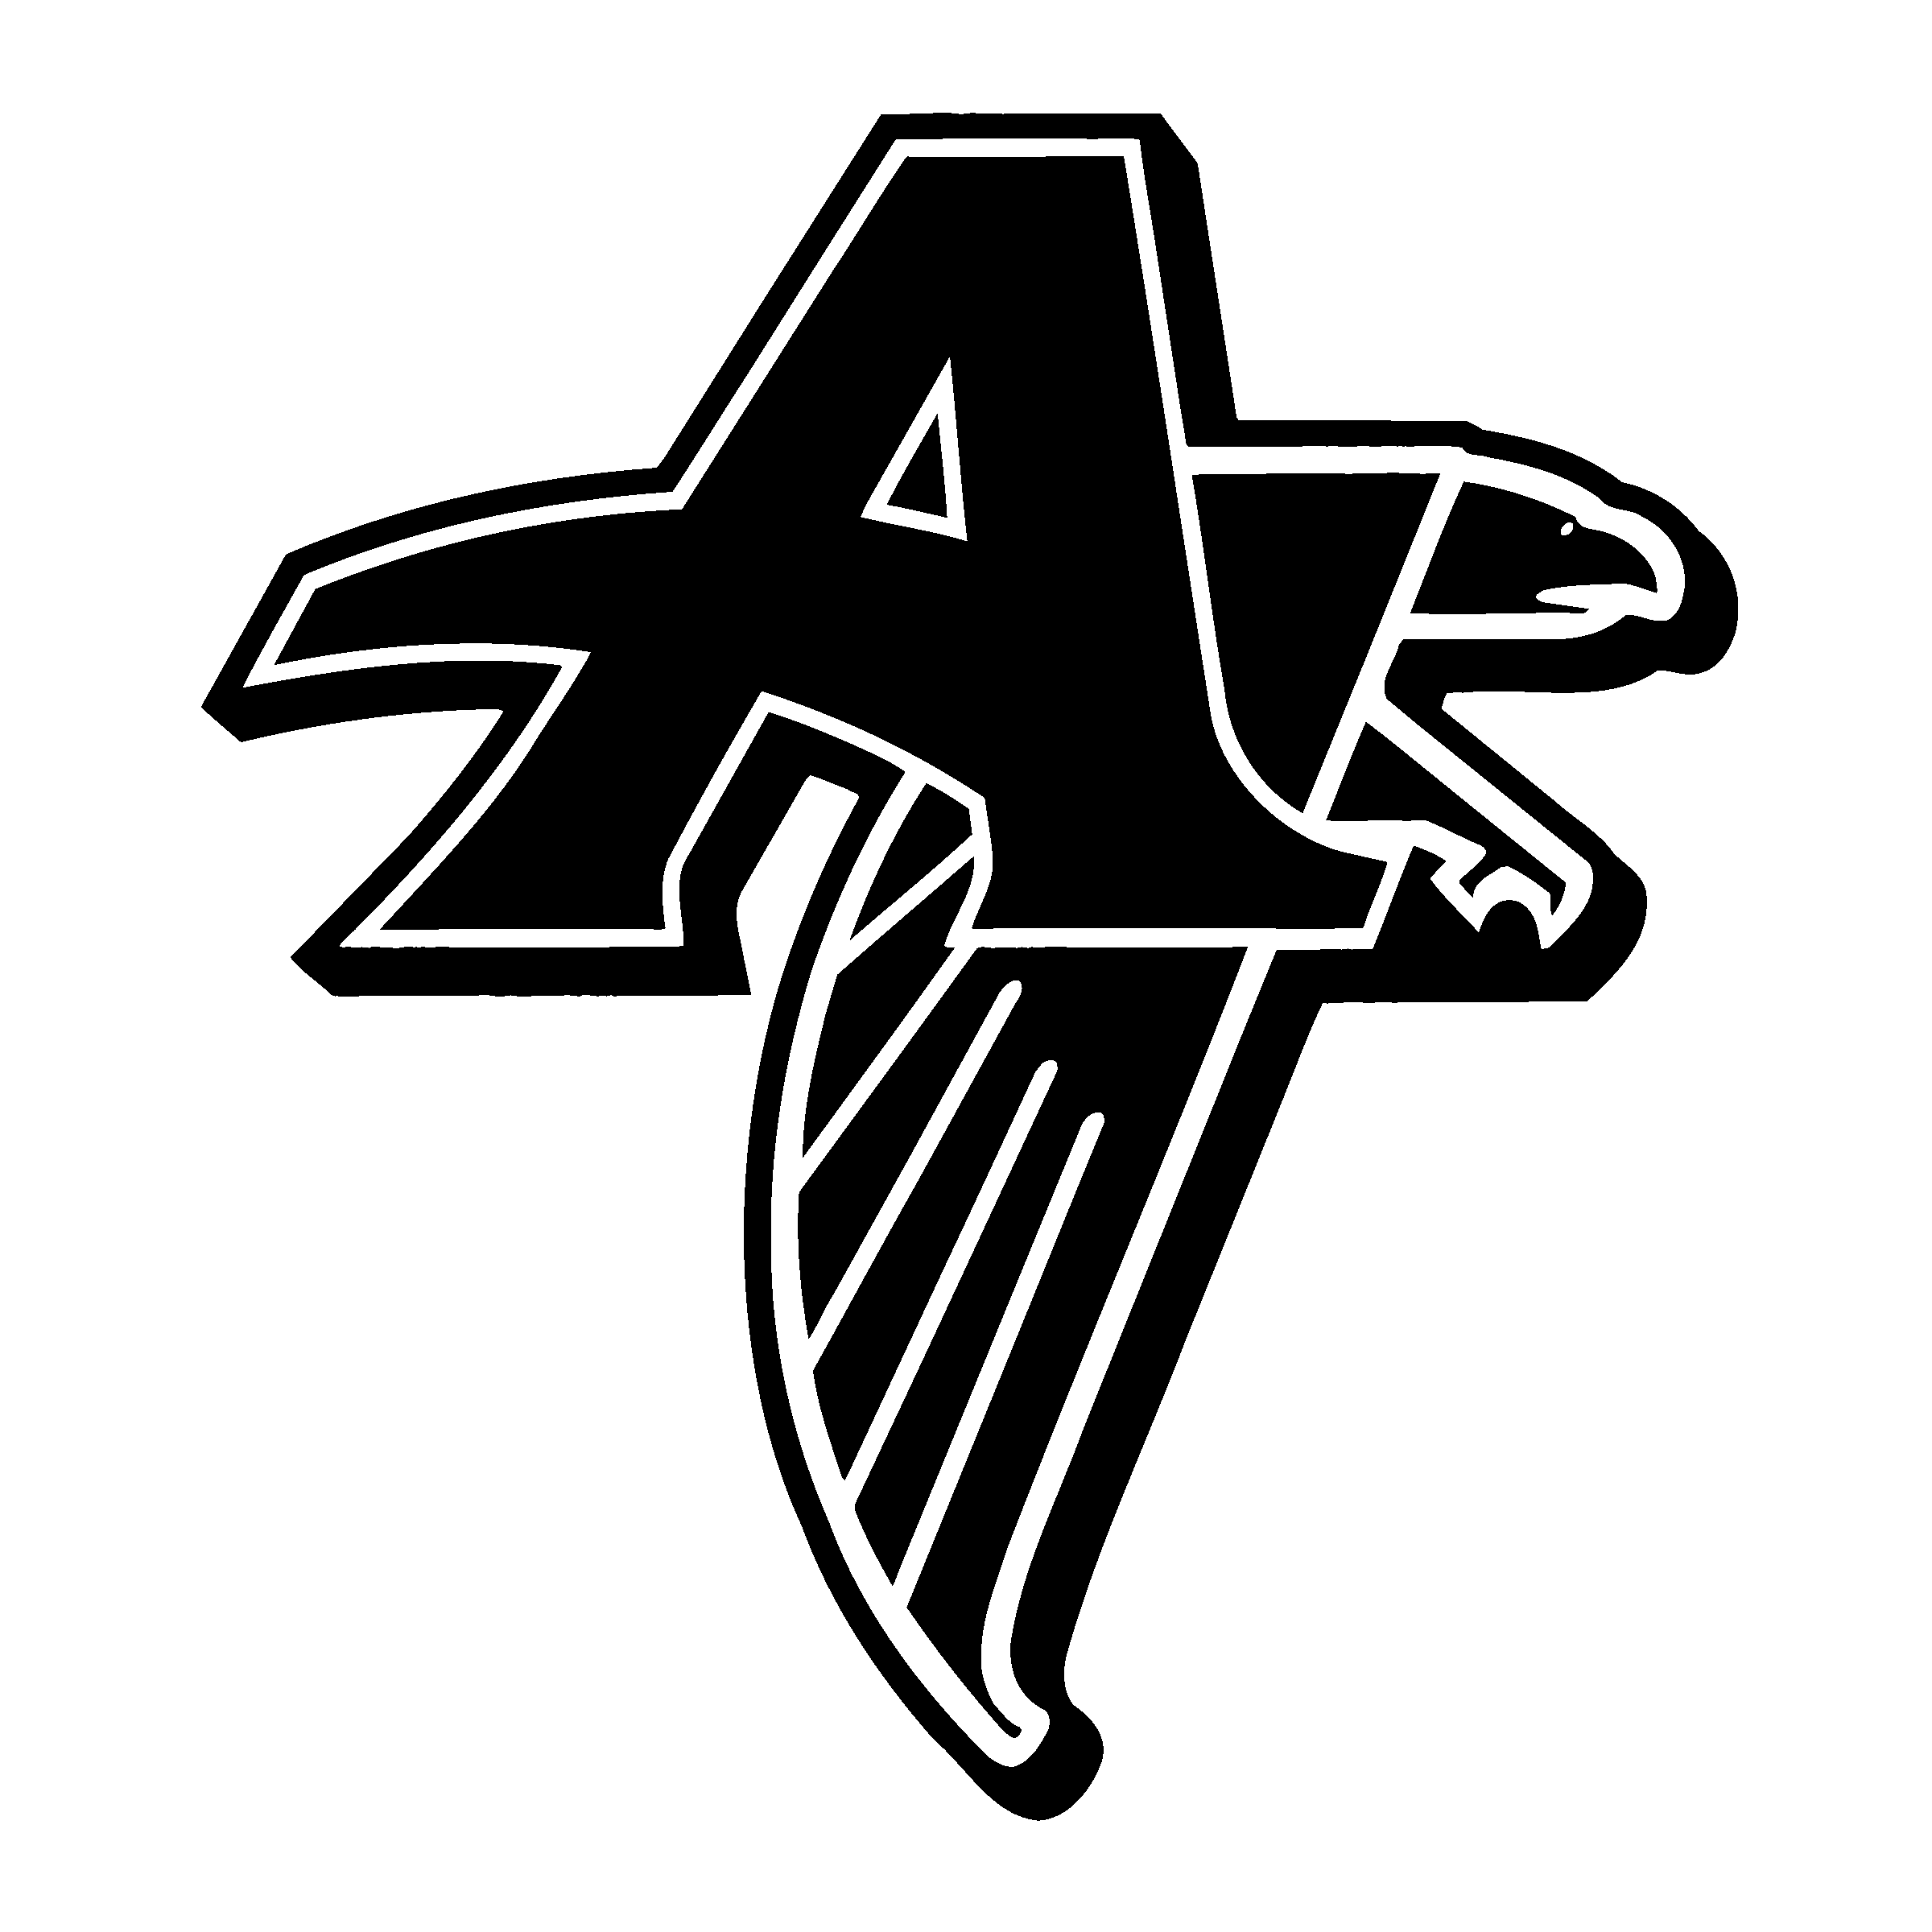 White Falcons Logo - Atlanta Falcons 2 Logo SVG Vector & PNG Transparent - Vector Logo Supply